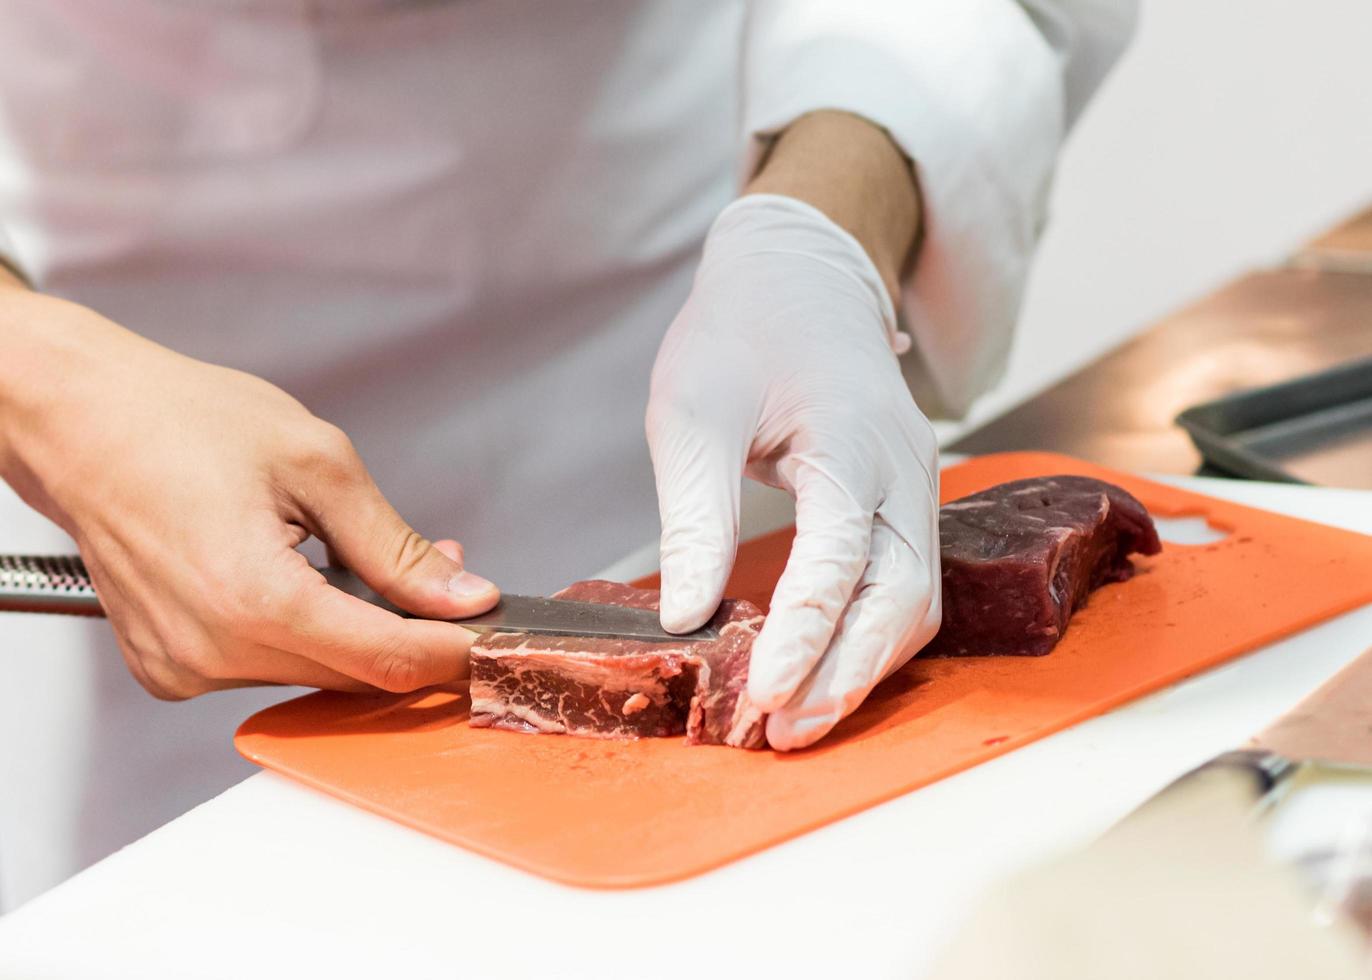 Chef cortando carne cruda fresca con un cuchillo en la cocina foto